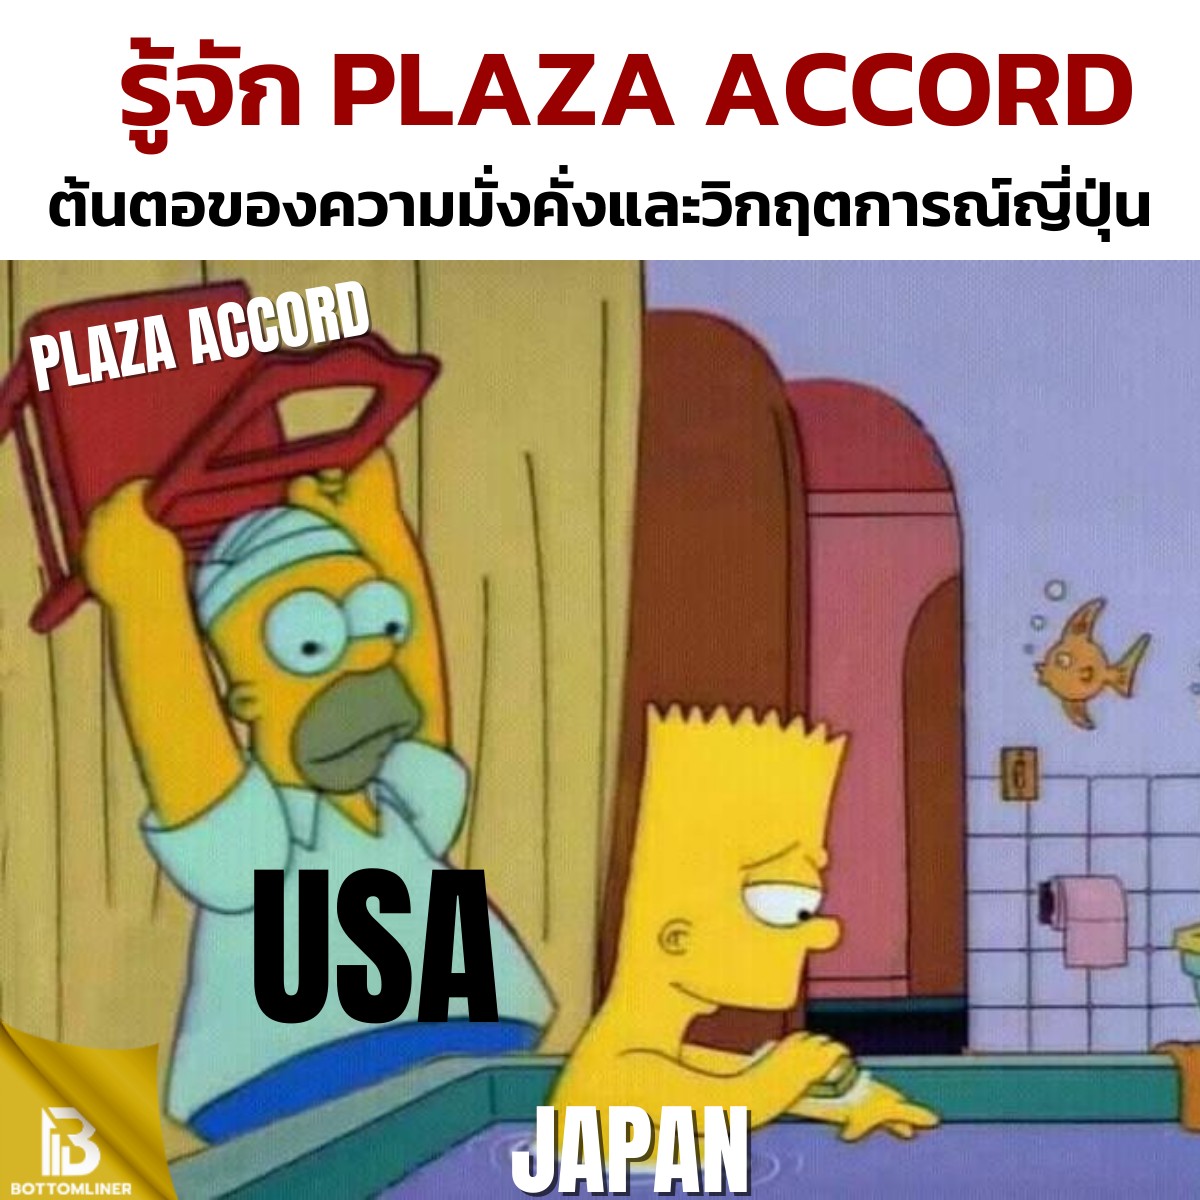 รู้จักเหตุการณ์ Plaza Accord ต้นต่อของความมั่งคั่งและวิกฤตการณ์ญี่ปุ่น